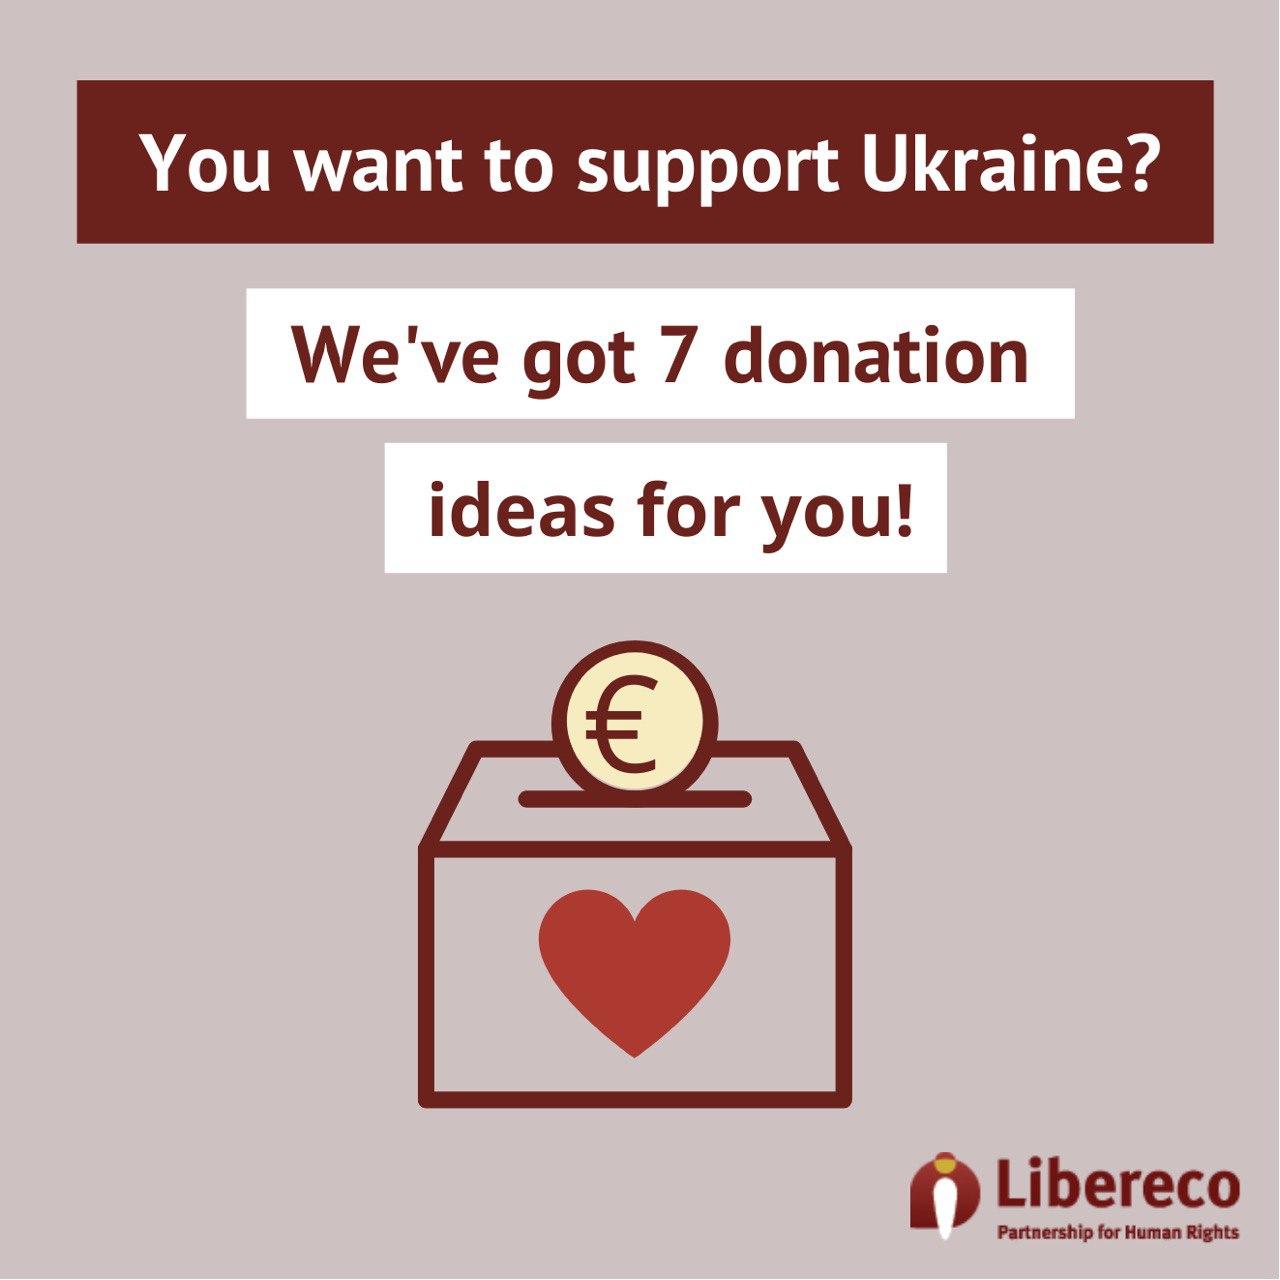 Ukraine support fundraising campaign